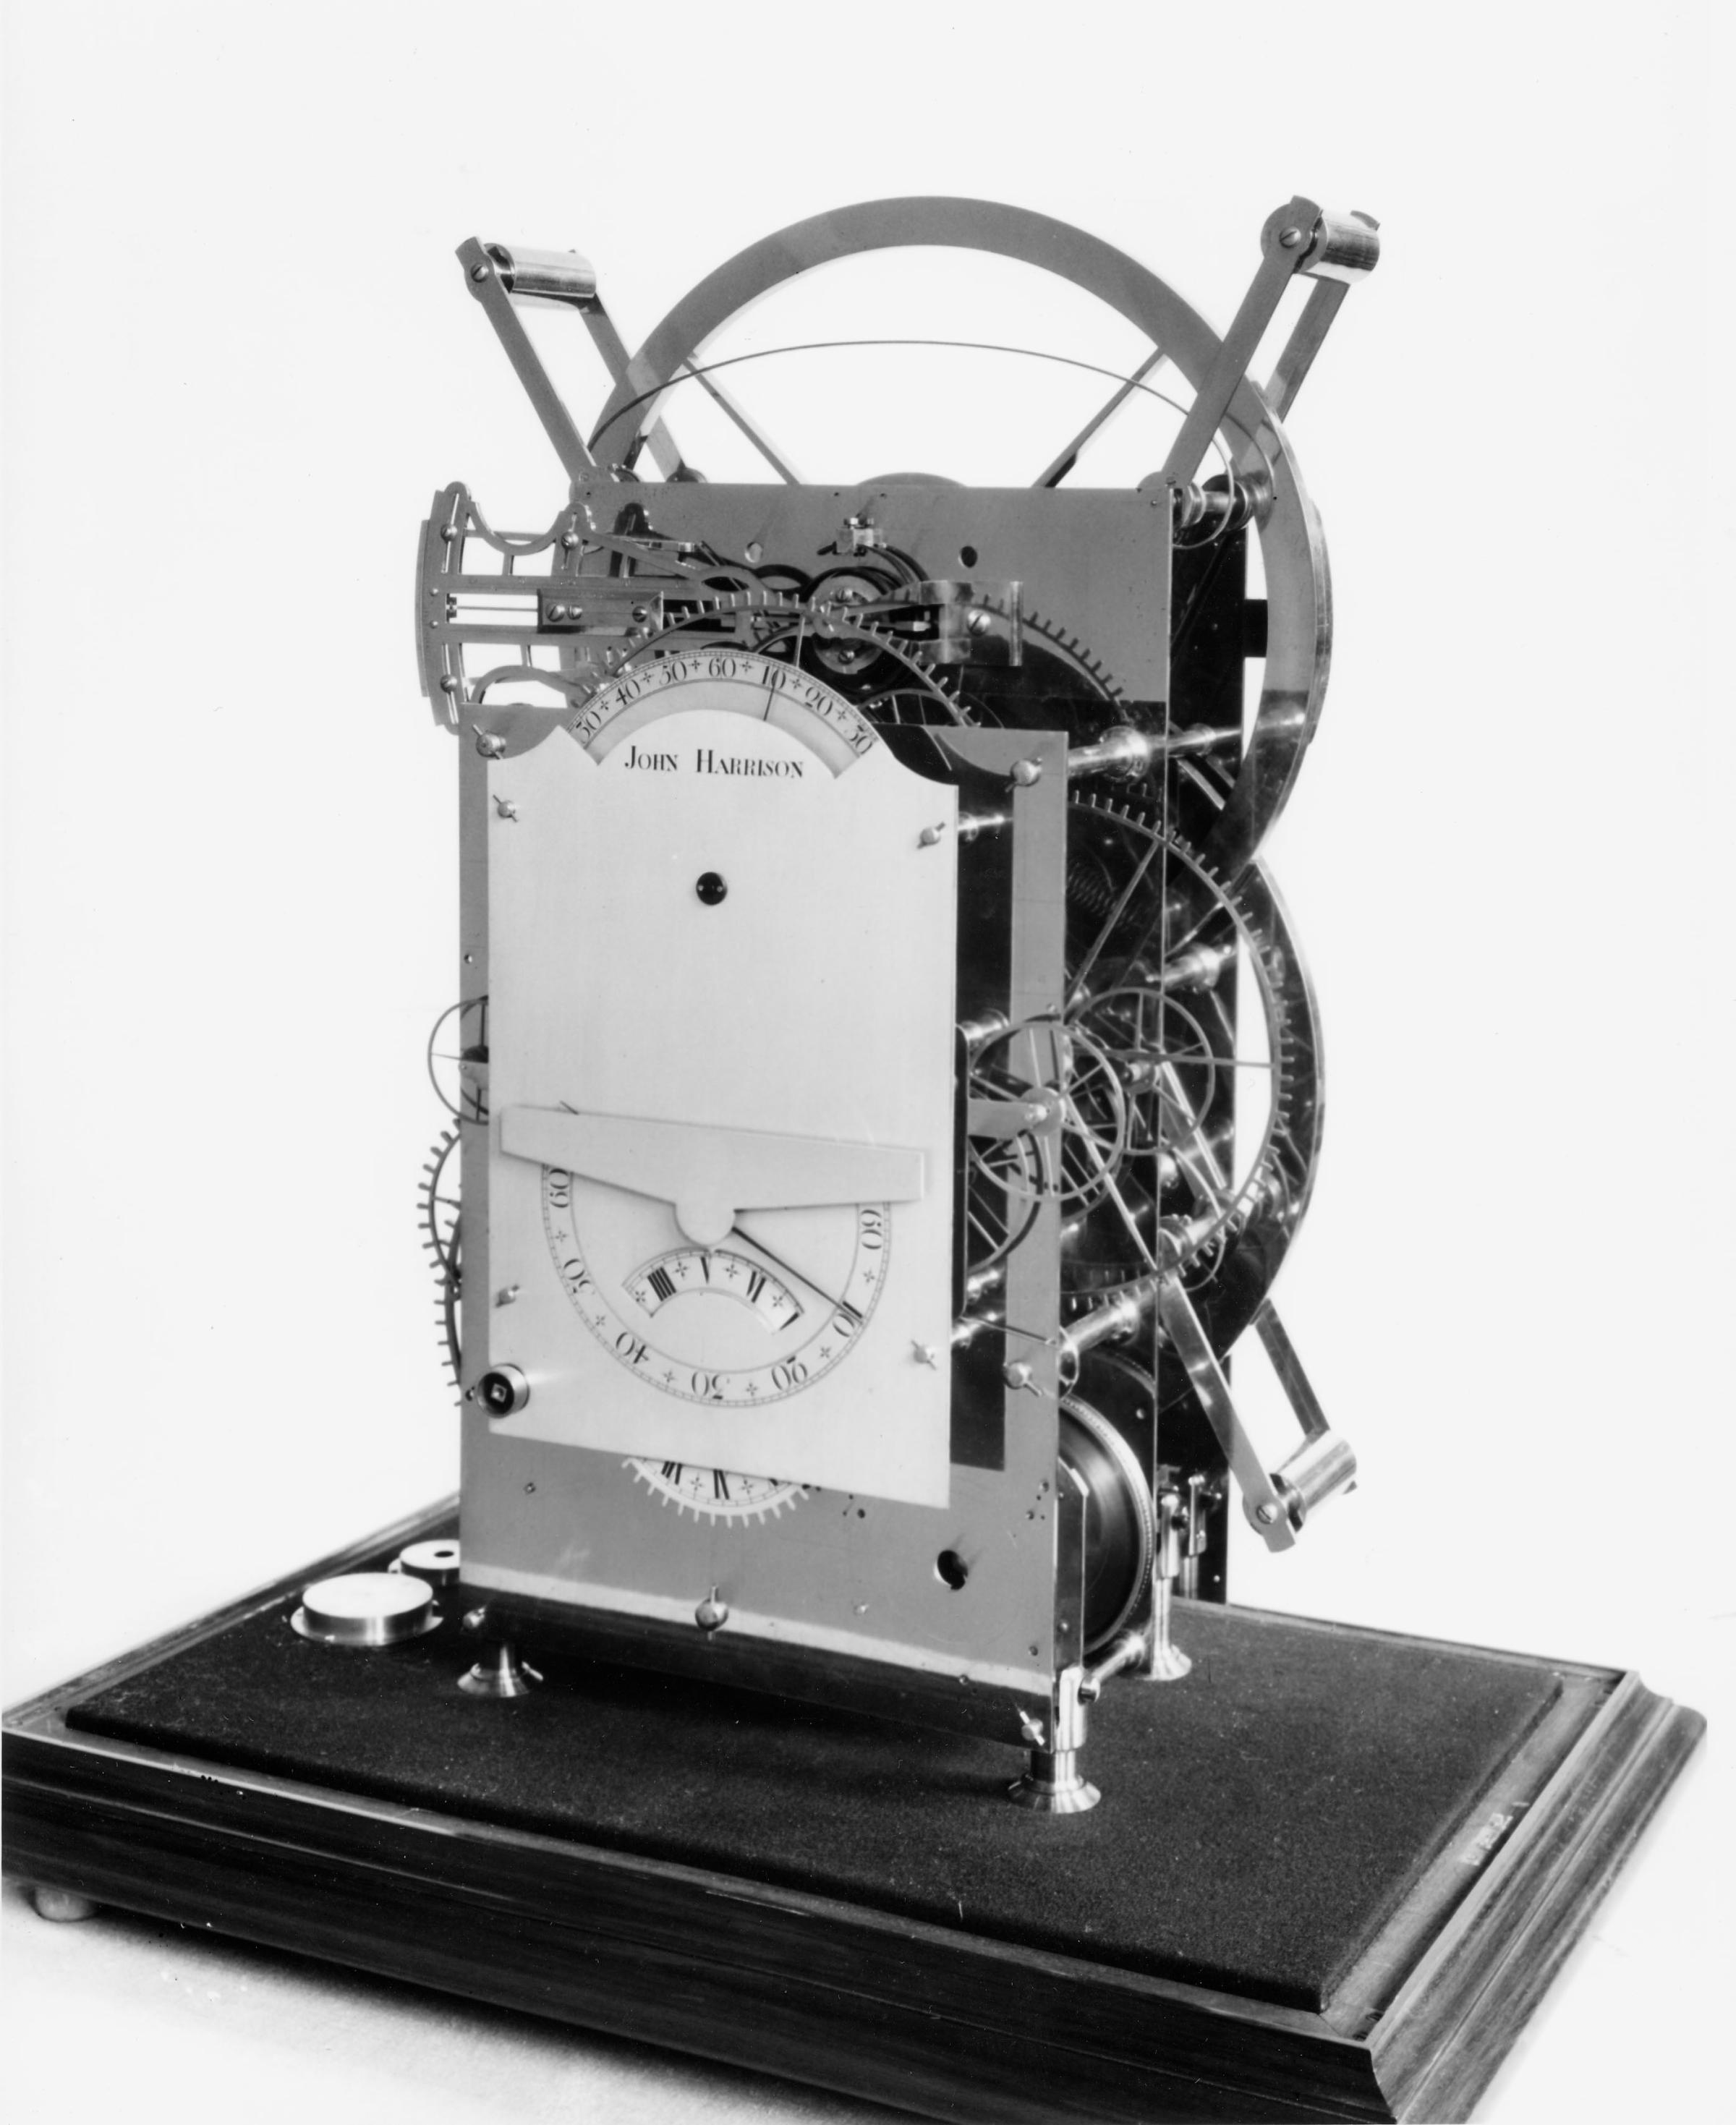 John Harrison's Third Marine Chronometer